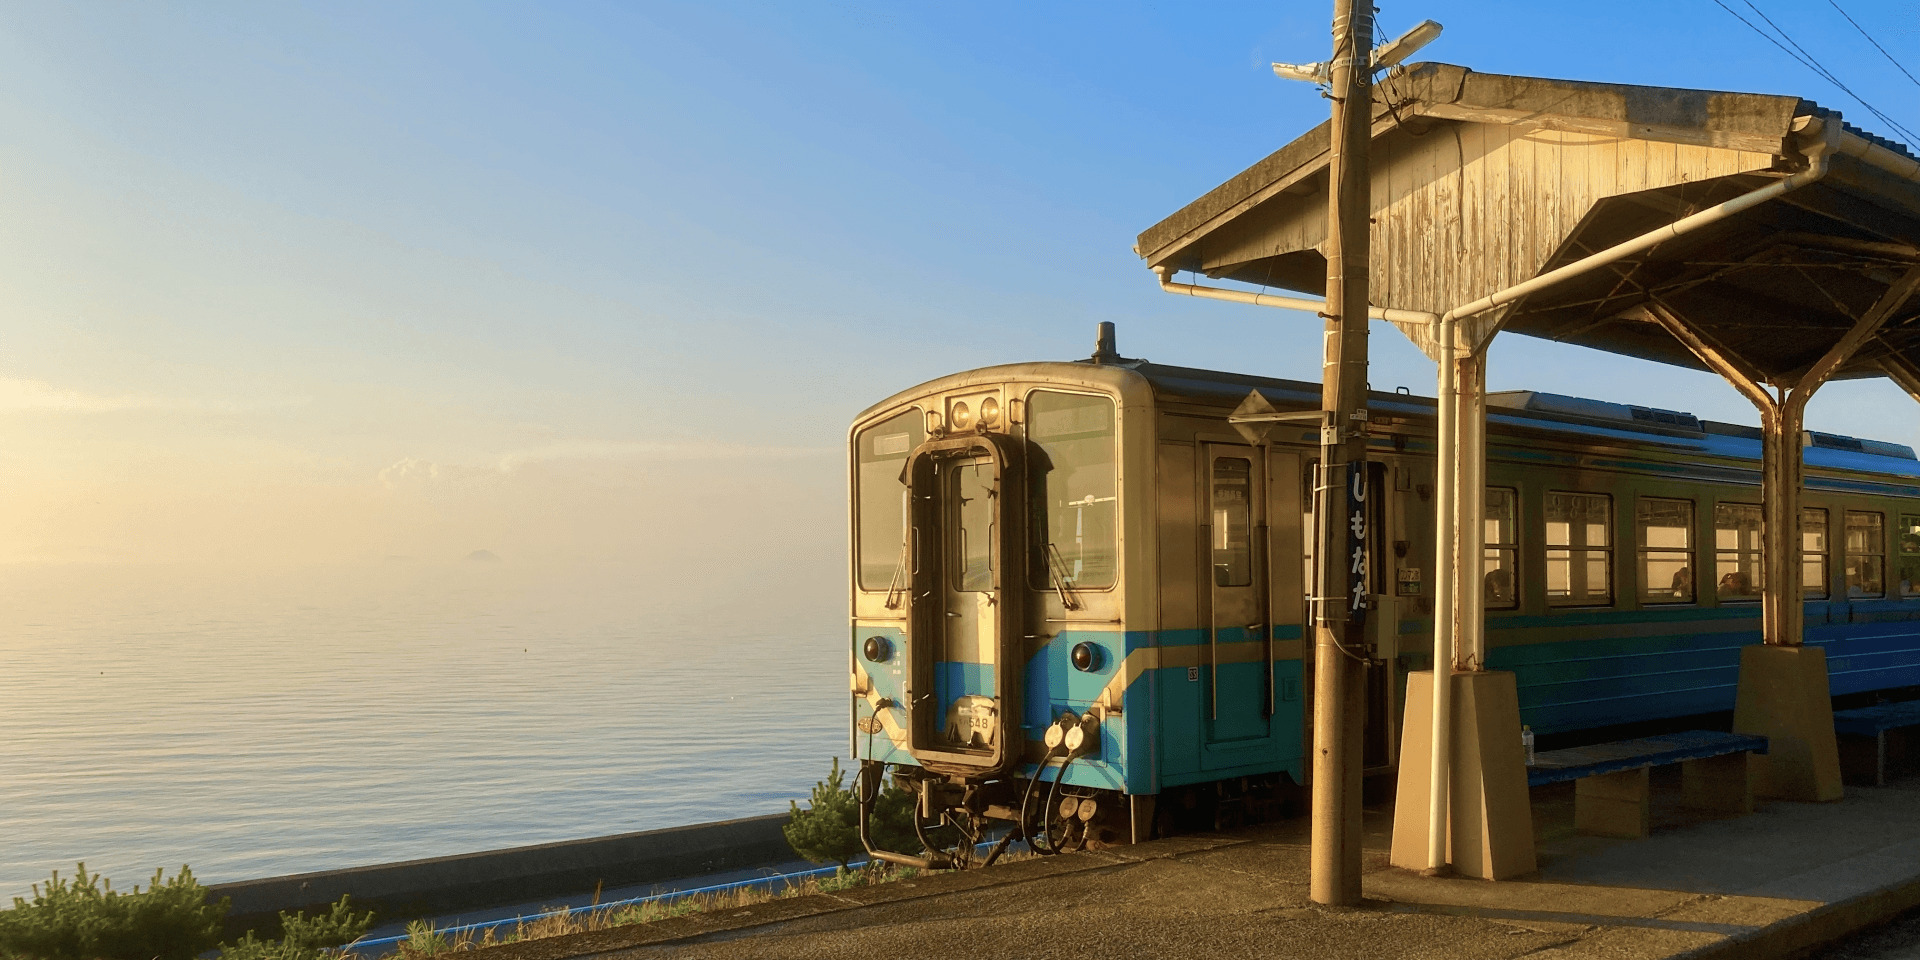 shikoku-local-train-banner-edit